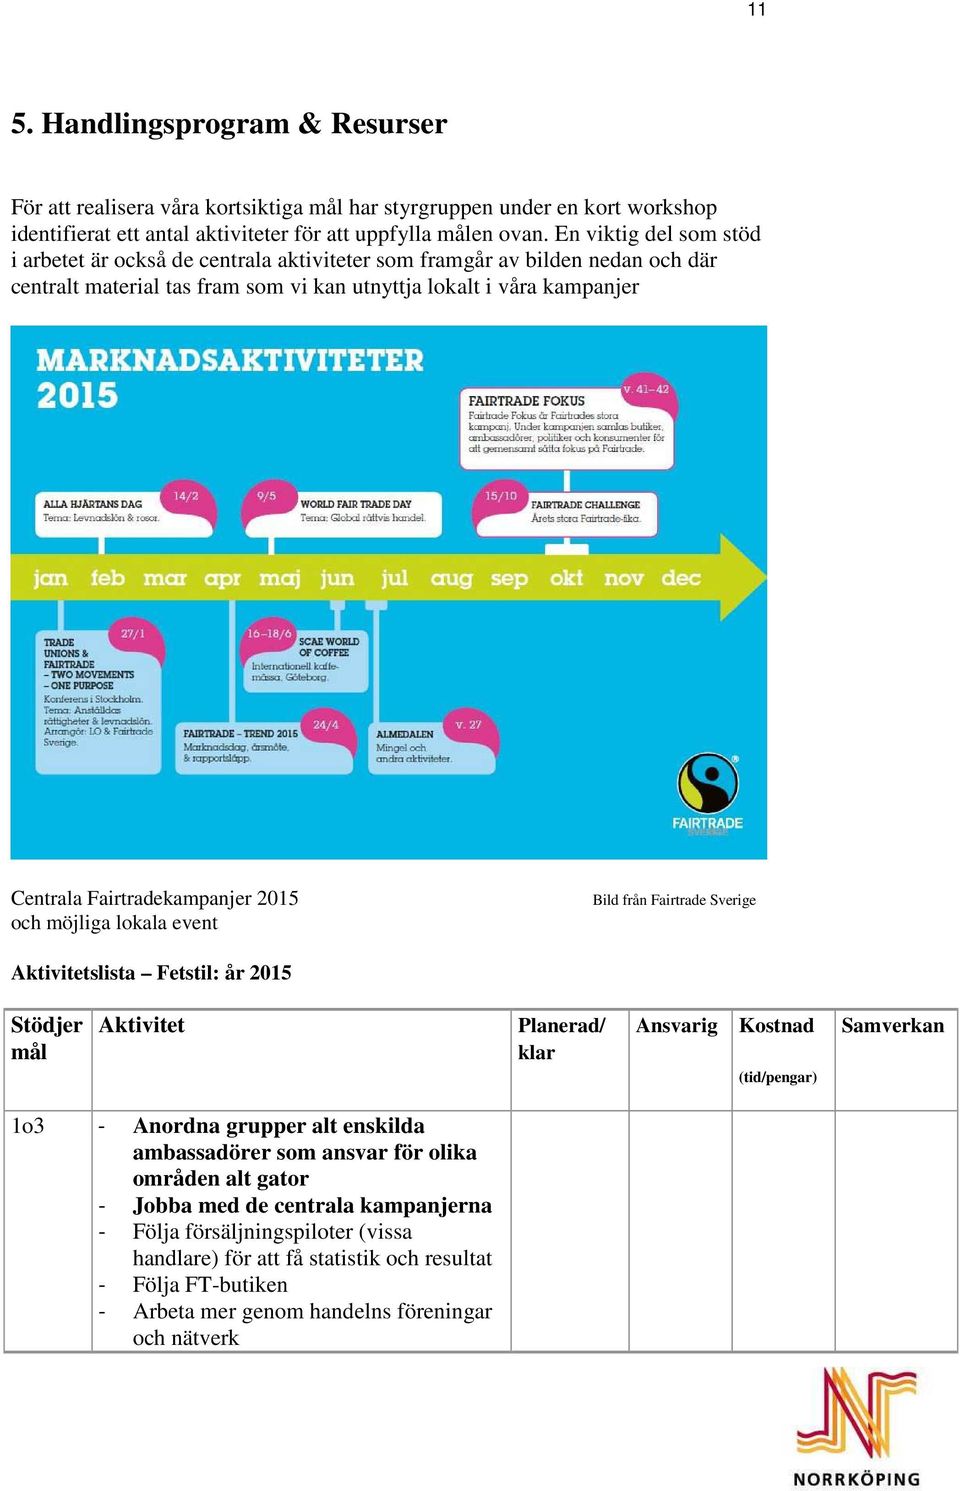 Fairtradekampanjer 2015 och möjliga lokala event Bild från Fairtrade Sverige Aktivitetslista Fetstil: år 2015 Stödjer mål Aktivitet Planerad/ klar Ansvarig Kostnad (tid/pengar) Samverkan 1o3 -